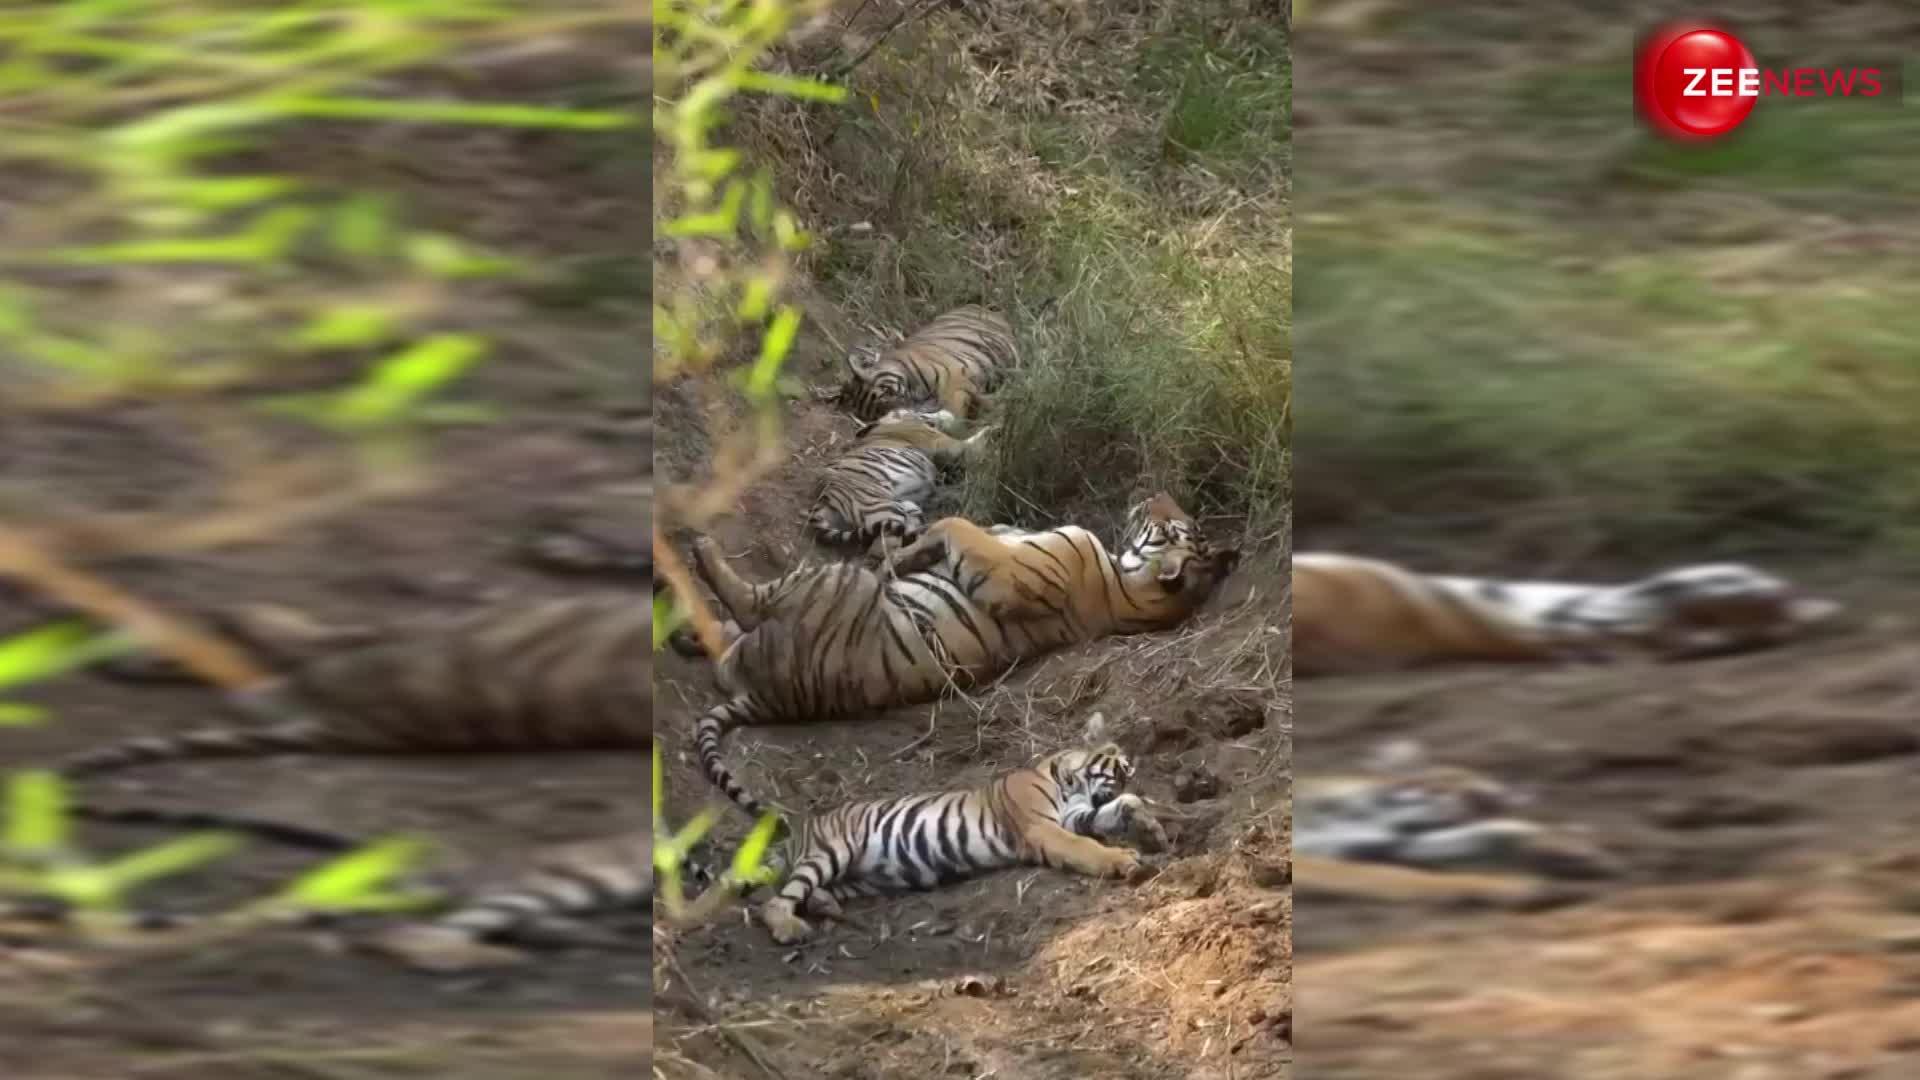 जंगल में पेड़ की छांव के नीचे झपकी लेता दिखा बाघ का पूरा परिवार, आज से पहले नहीं देखा होगा ऐसा नजारा